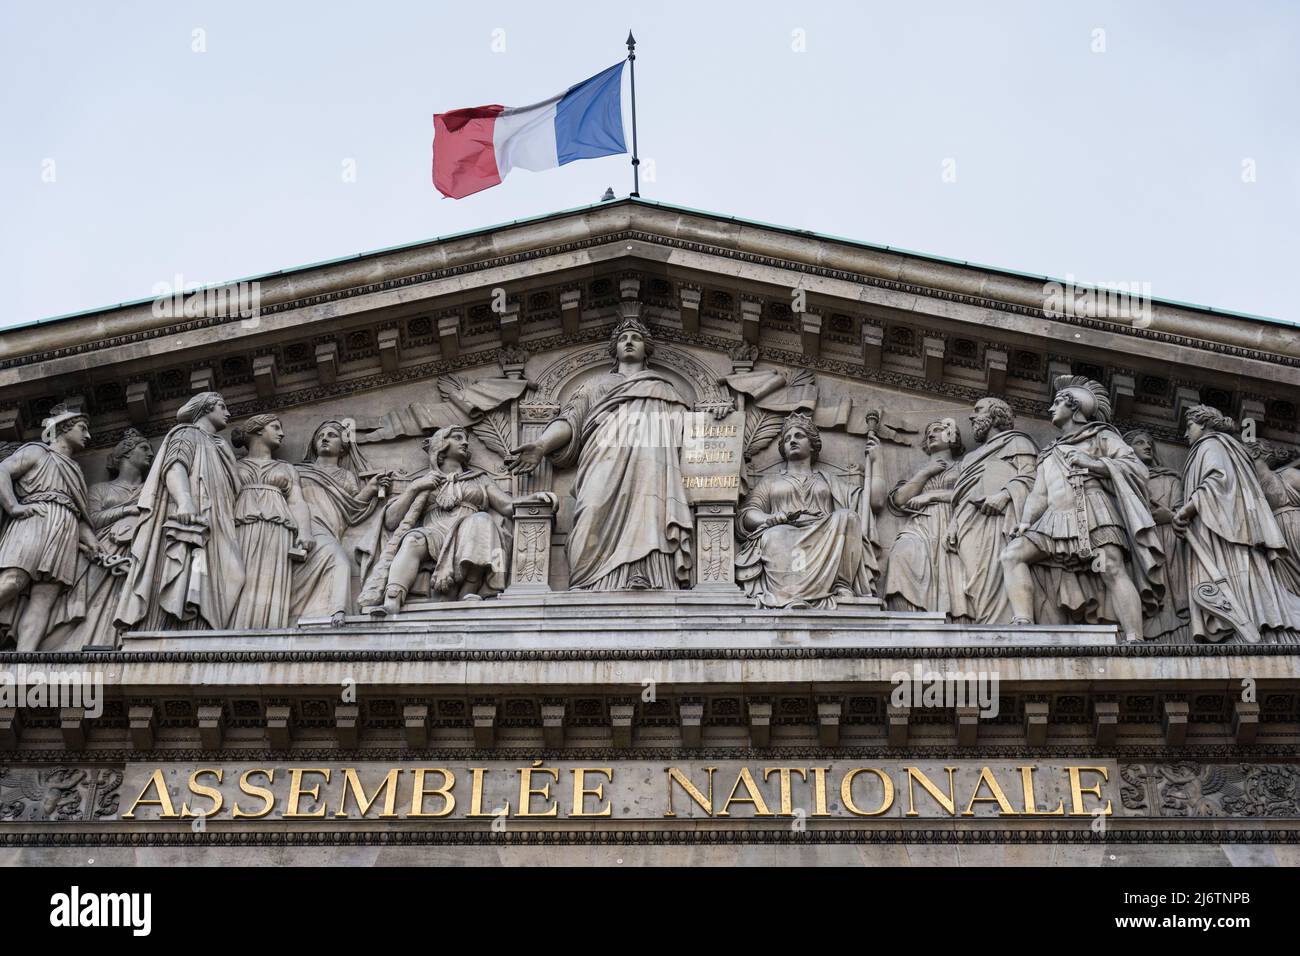 Parlement Français Banque d'image et photos - Alamy